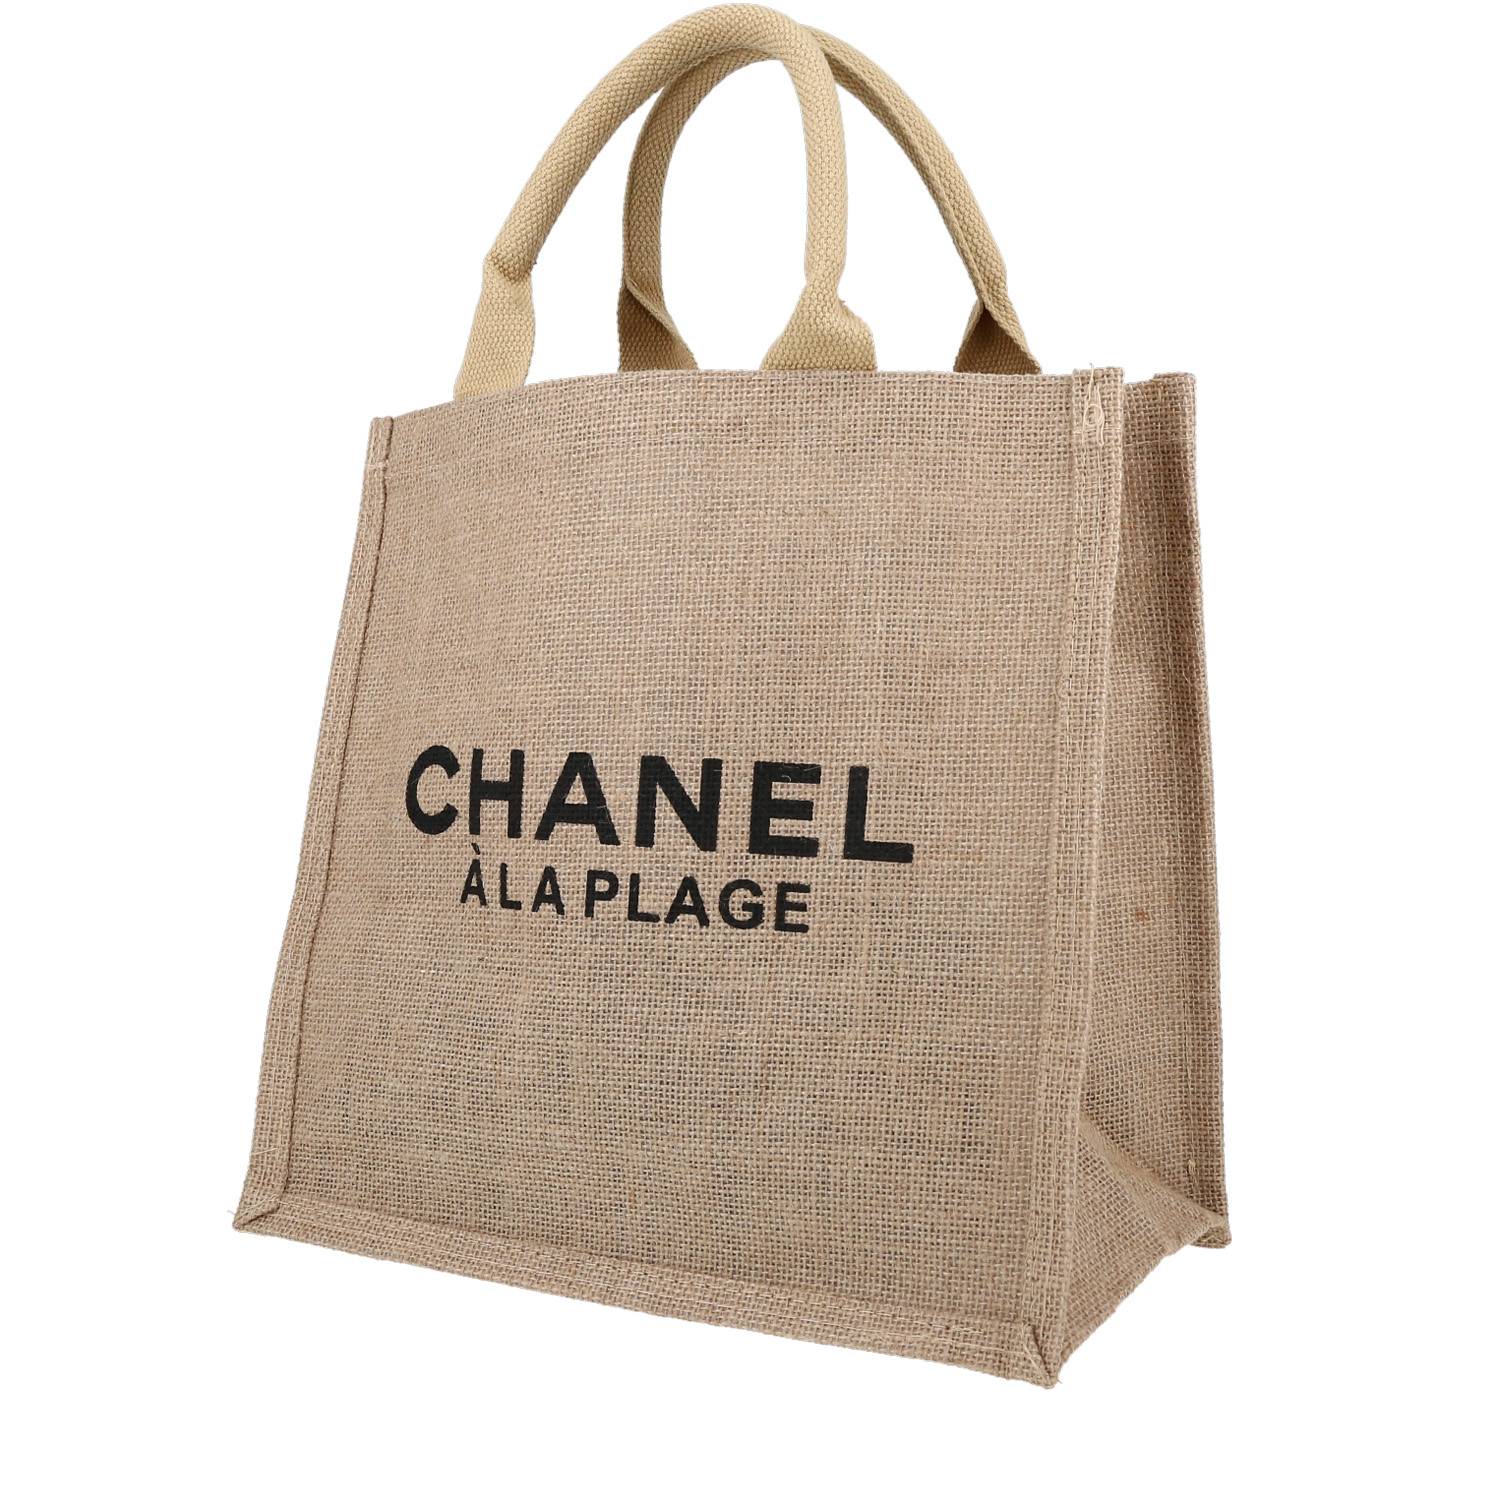 Chanel 31 Rue Cambon Tote Bag